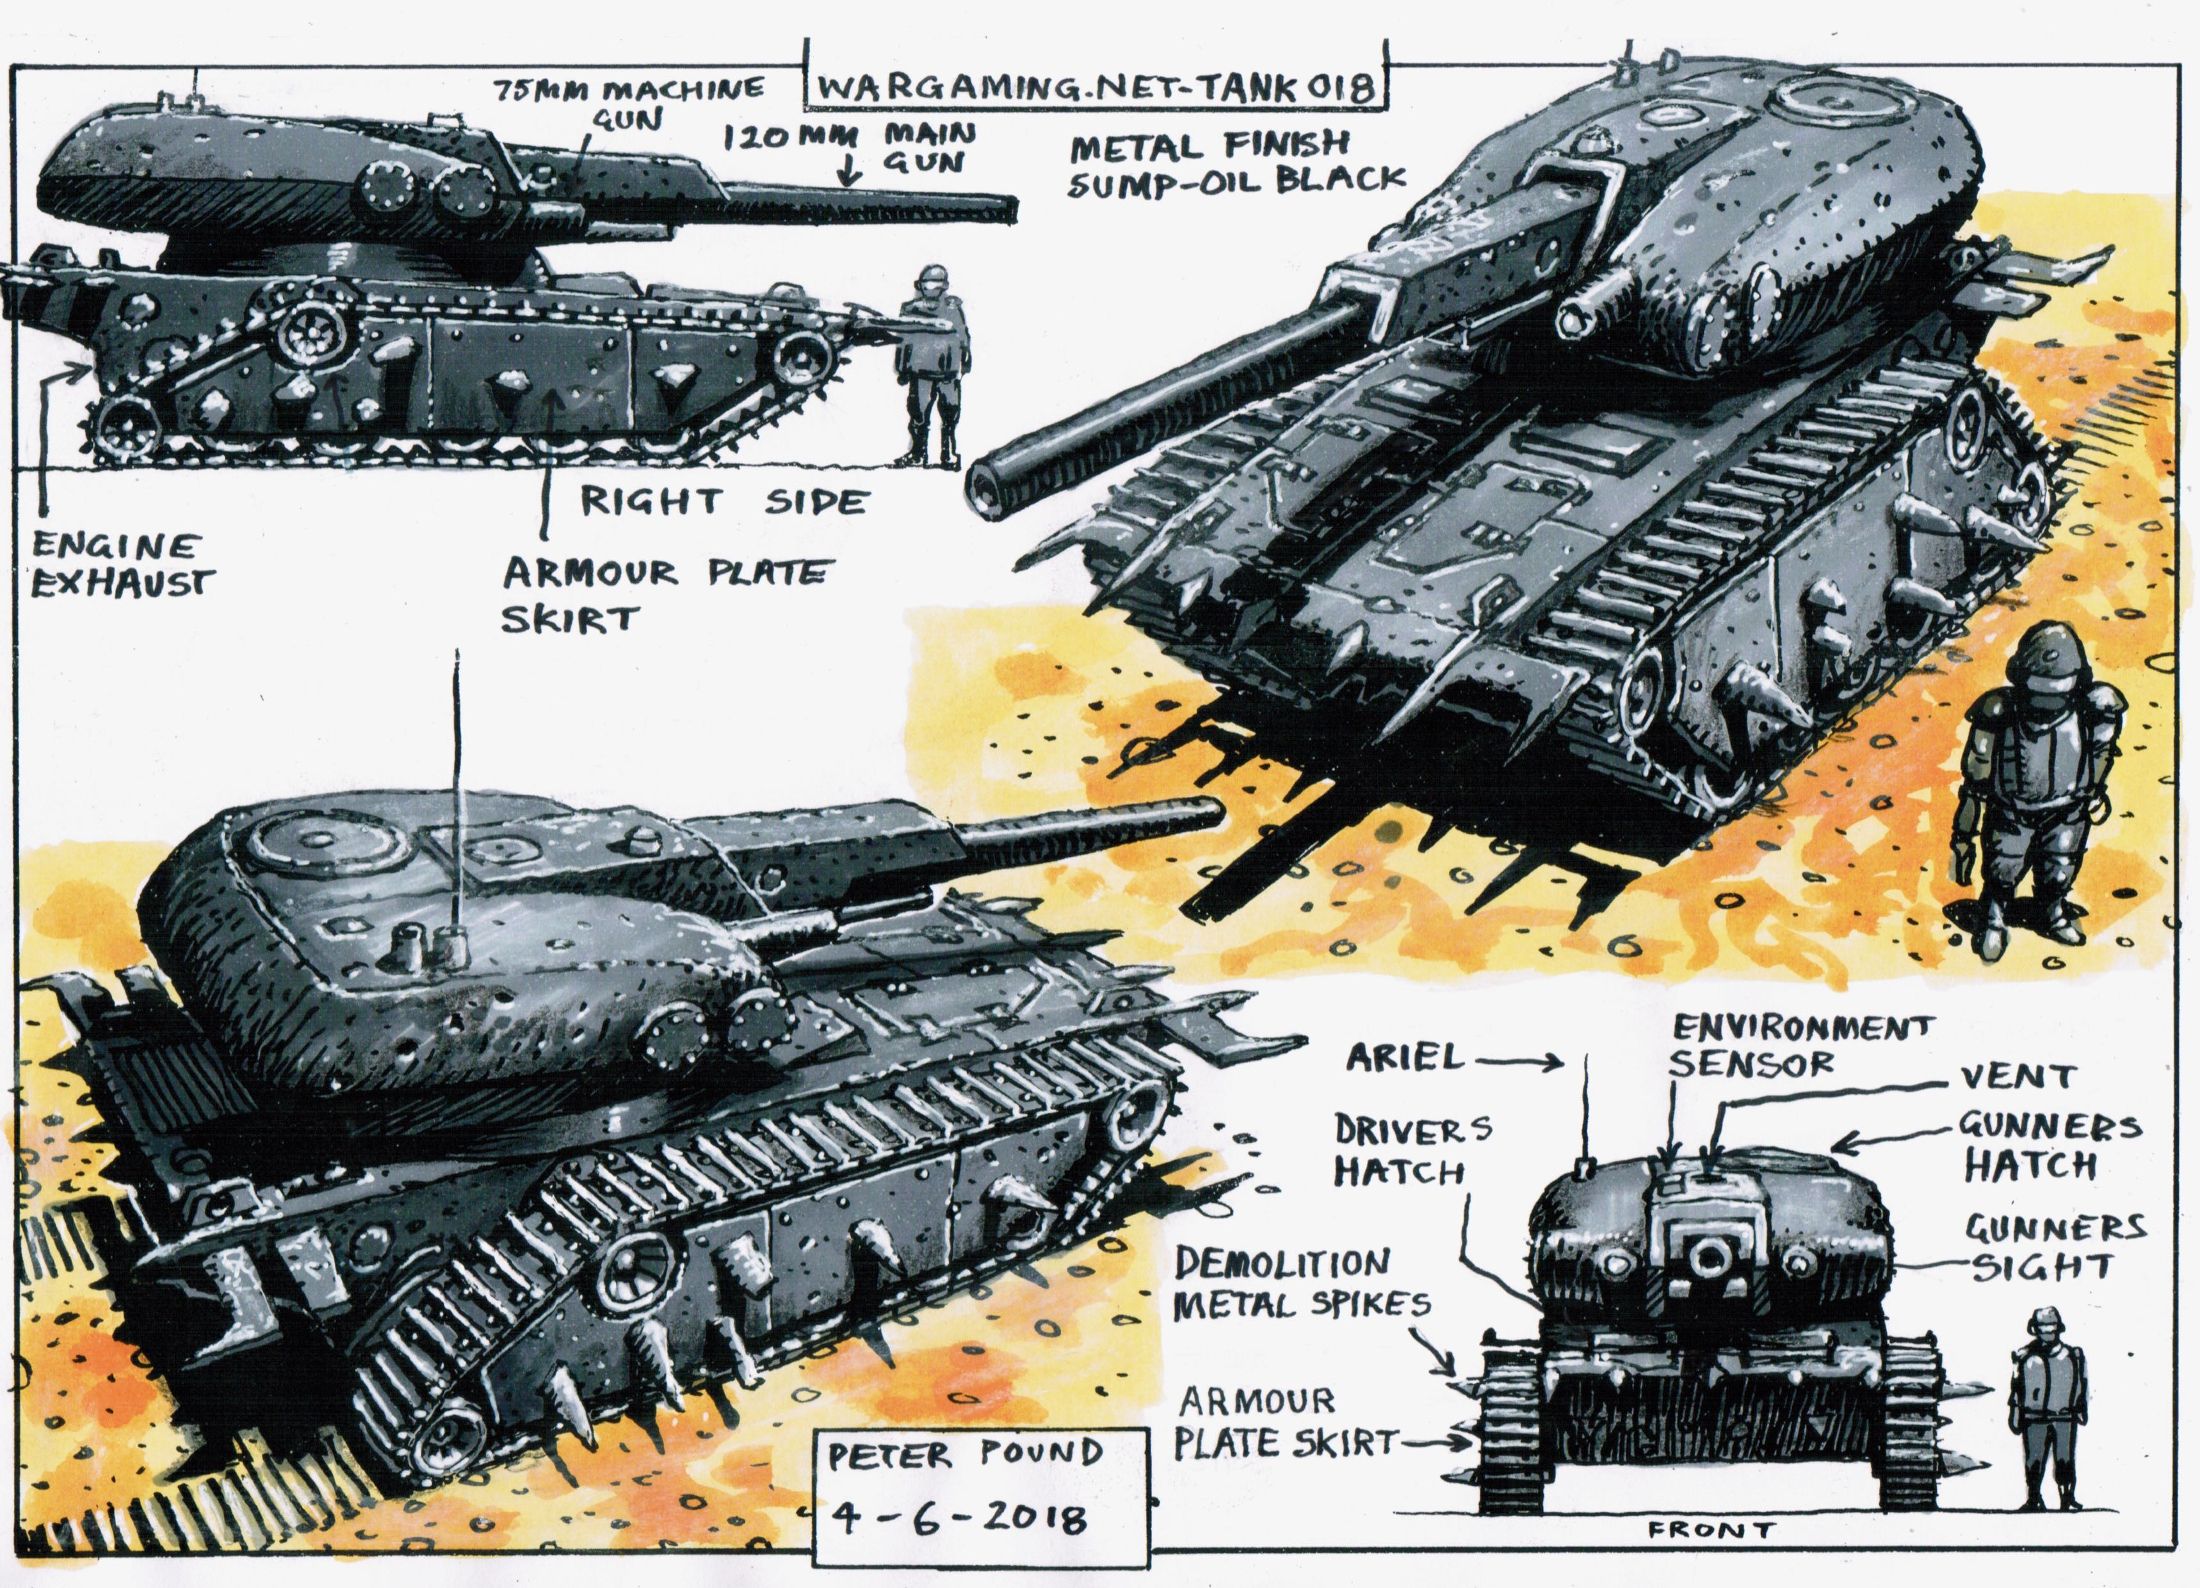 World of Tanks Blitz Peter Pound Gravedigger